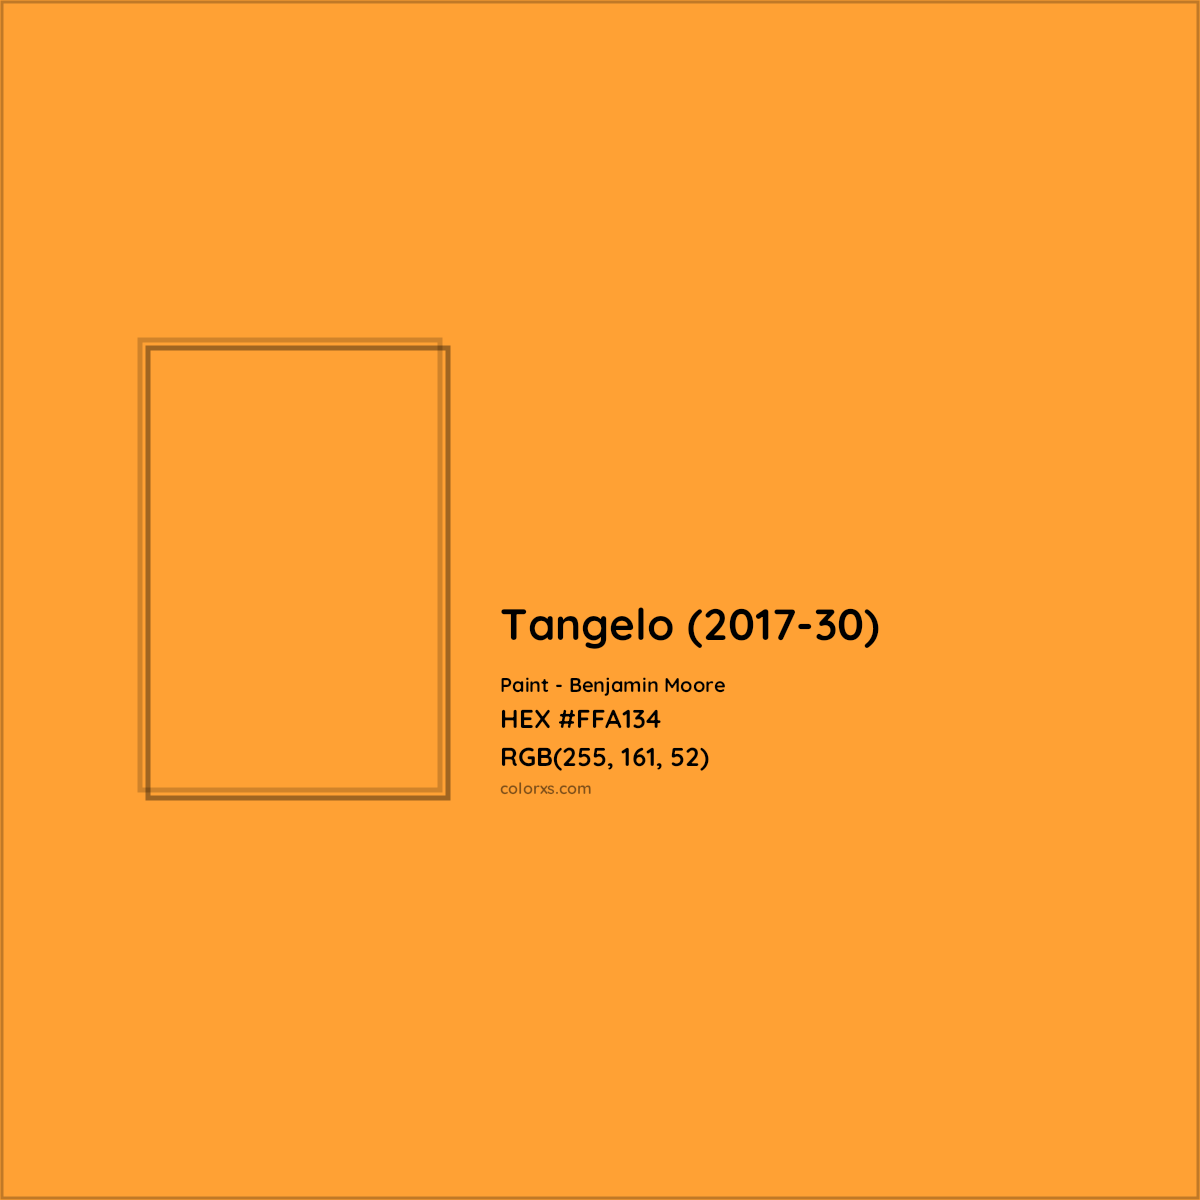 HEX #FFA134 Tangelo (2017-30) Paint Benjamin Moore - Color Code